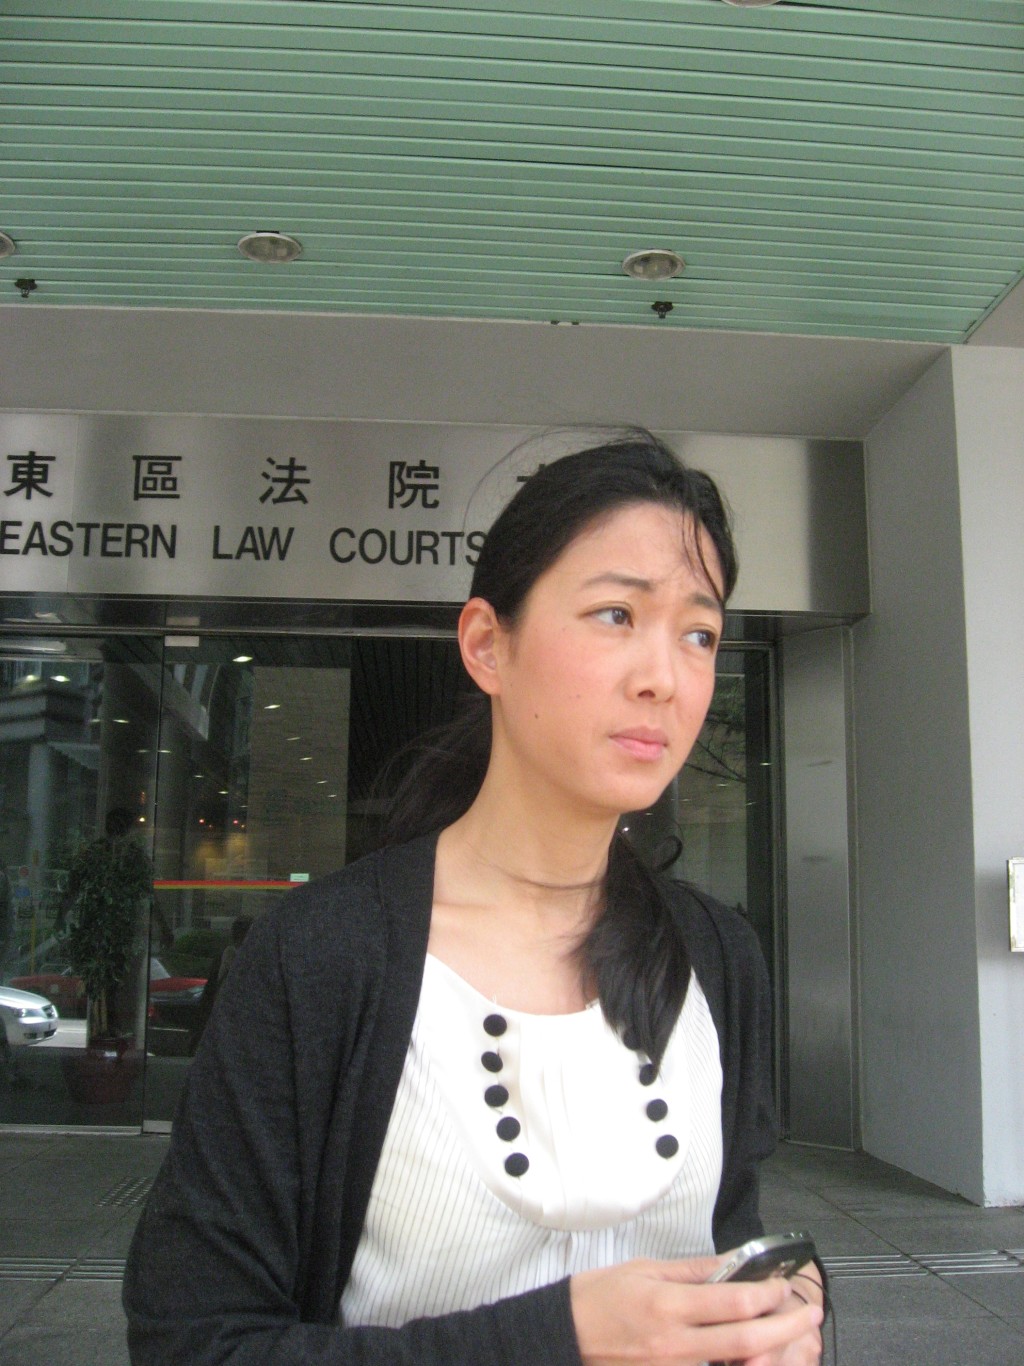 郭惠光2009年乘搭由其夫駕駛的汽車時因超速被截停、其丈夫吳繼霖被揭發未有本港駕駛執照、郭惠光承認一項「允許並無駕駛執照的人駕駛」的票控被判罰款七百元。